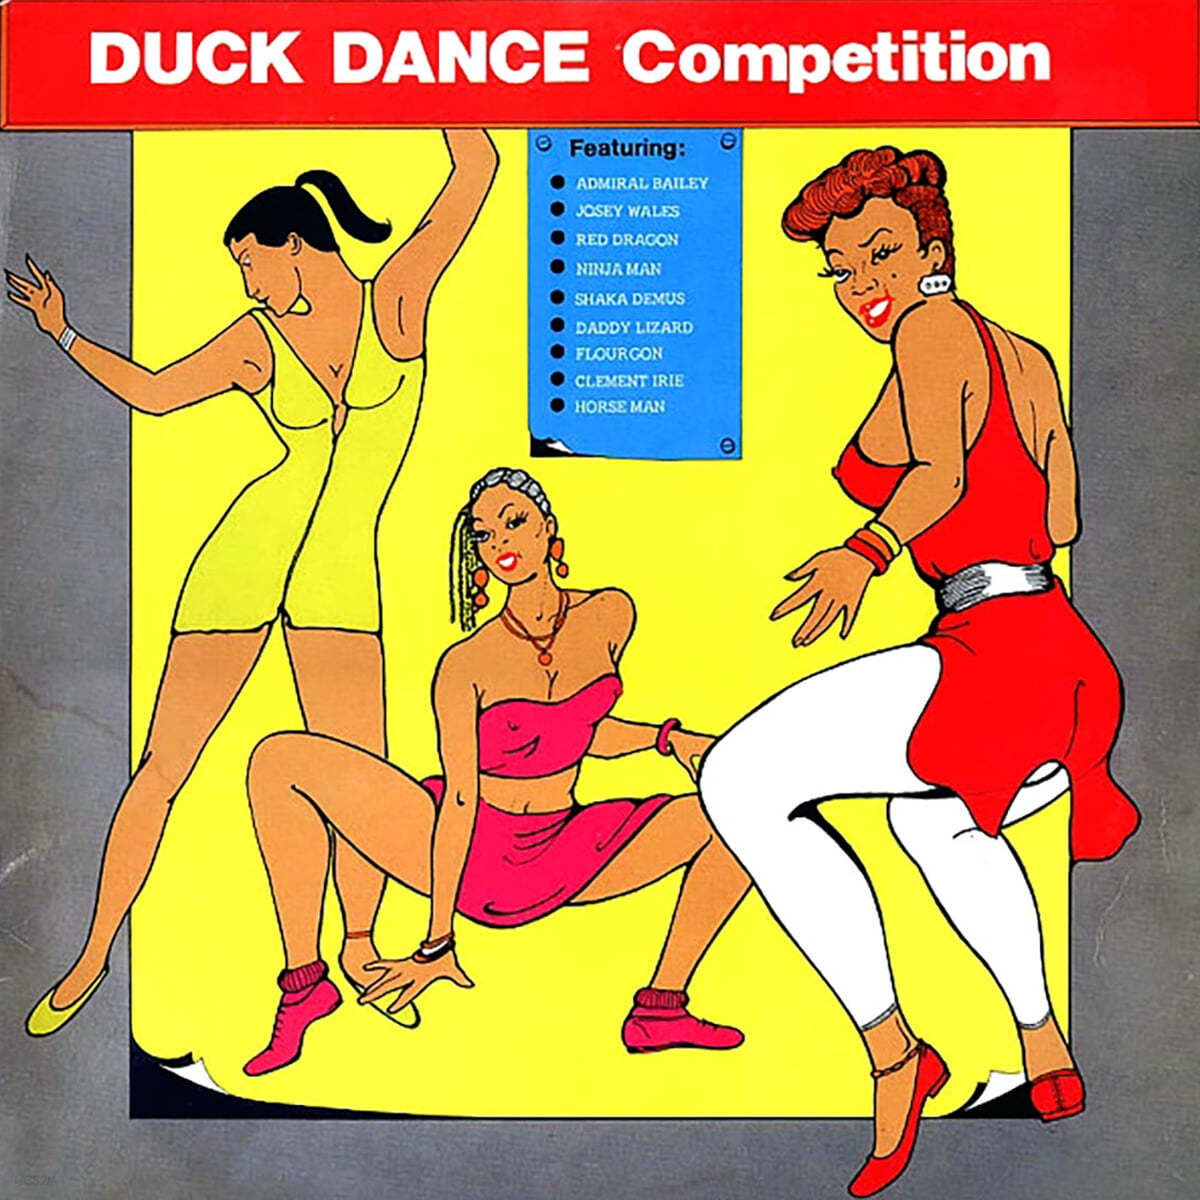 레게 음악 컴필레이션 - 덕 댄스 컴페티션 (Duck Dance Competition) [LP] 